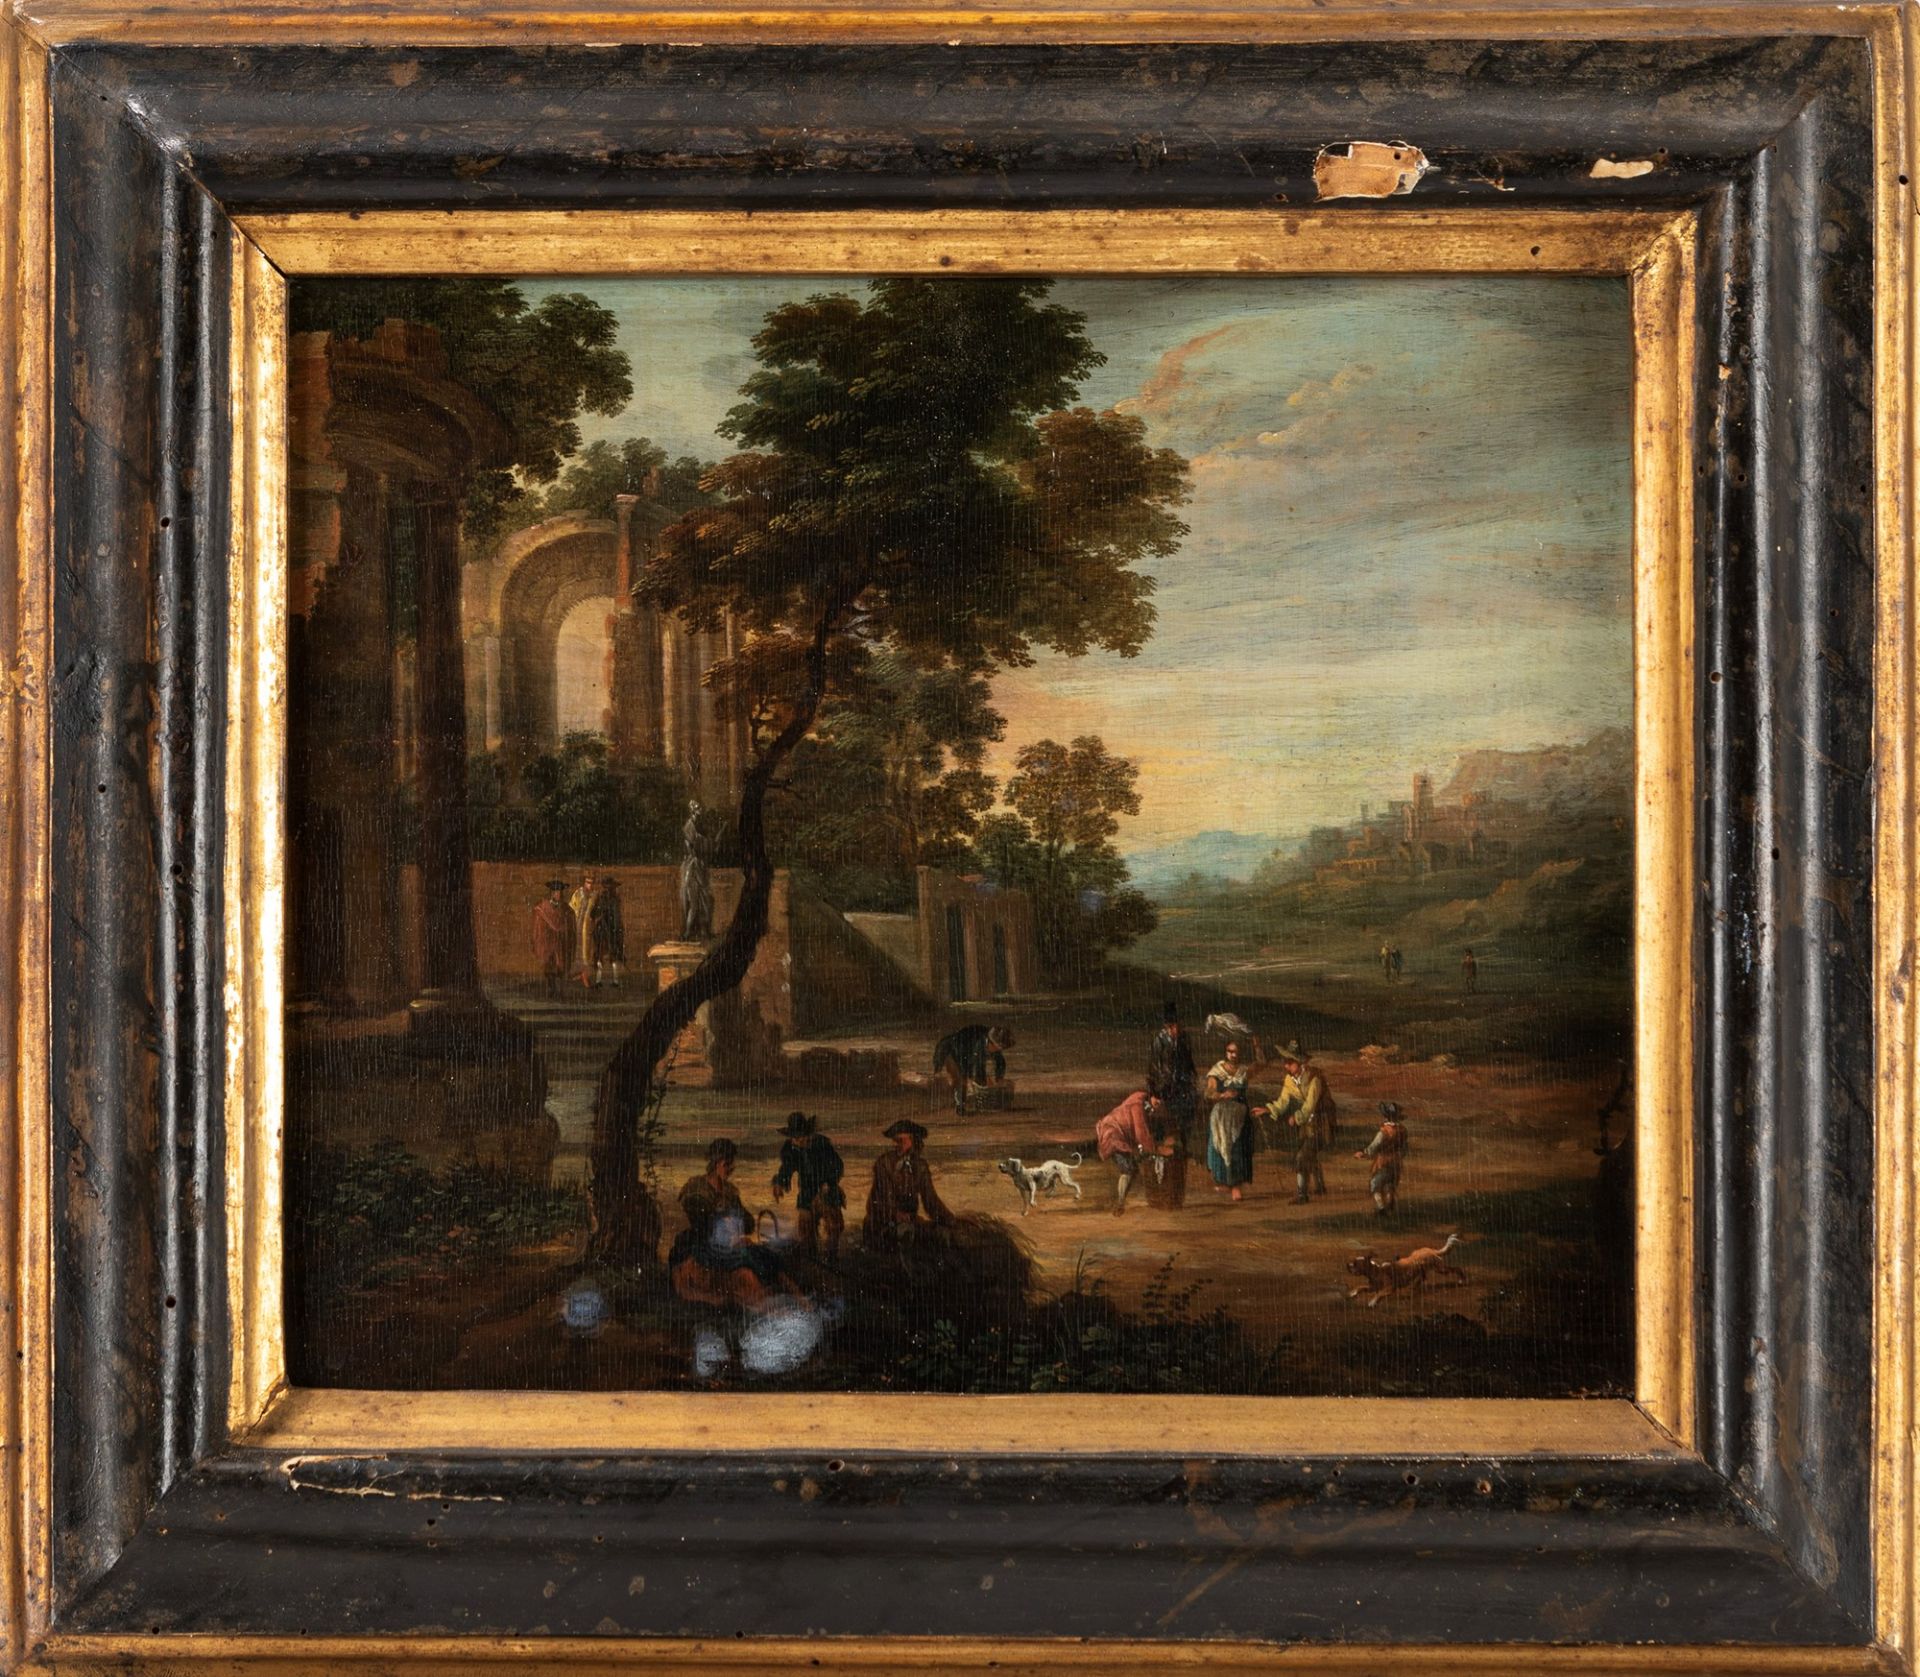 Pittore fiammingo attivo in Italia, fine secolo XVII - inizi secolo XVIII - Landscape with figures a